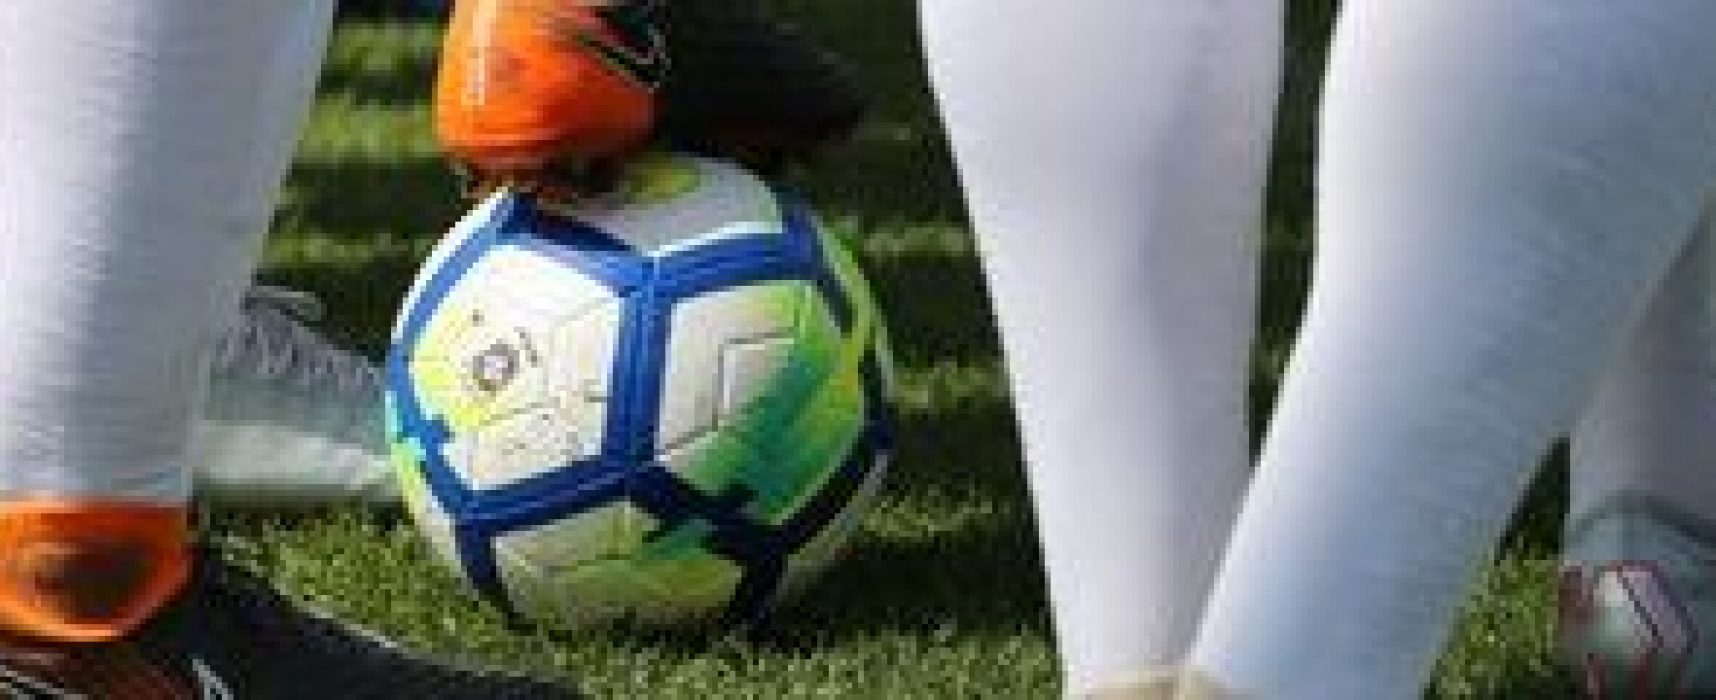 Câmara aprova isenção de dívidas de clubes de futebol durante pandemia